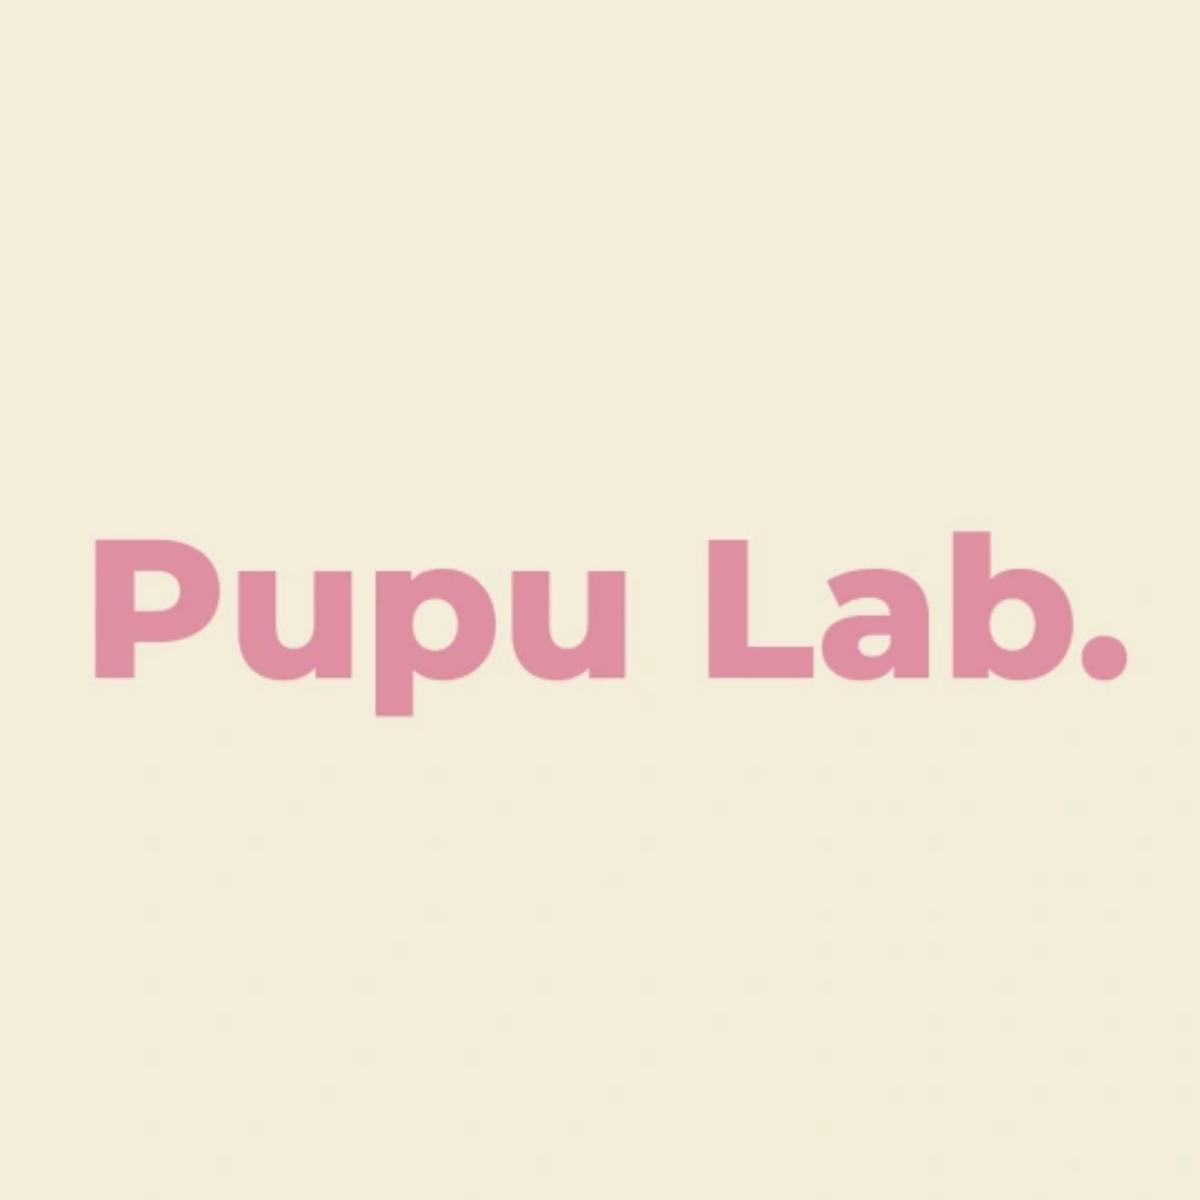 Pupu Lab's images